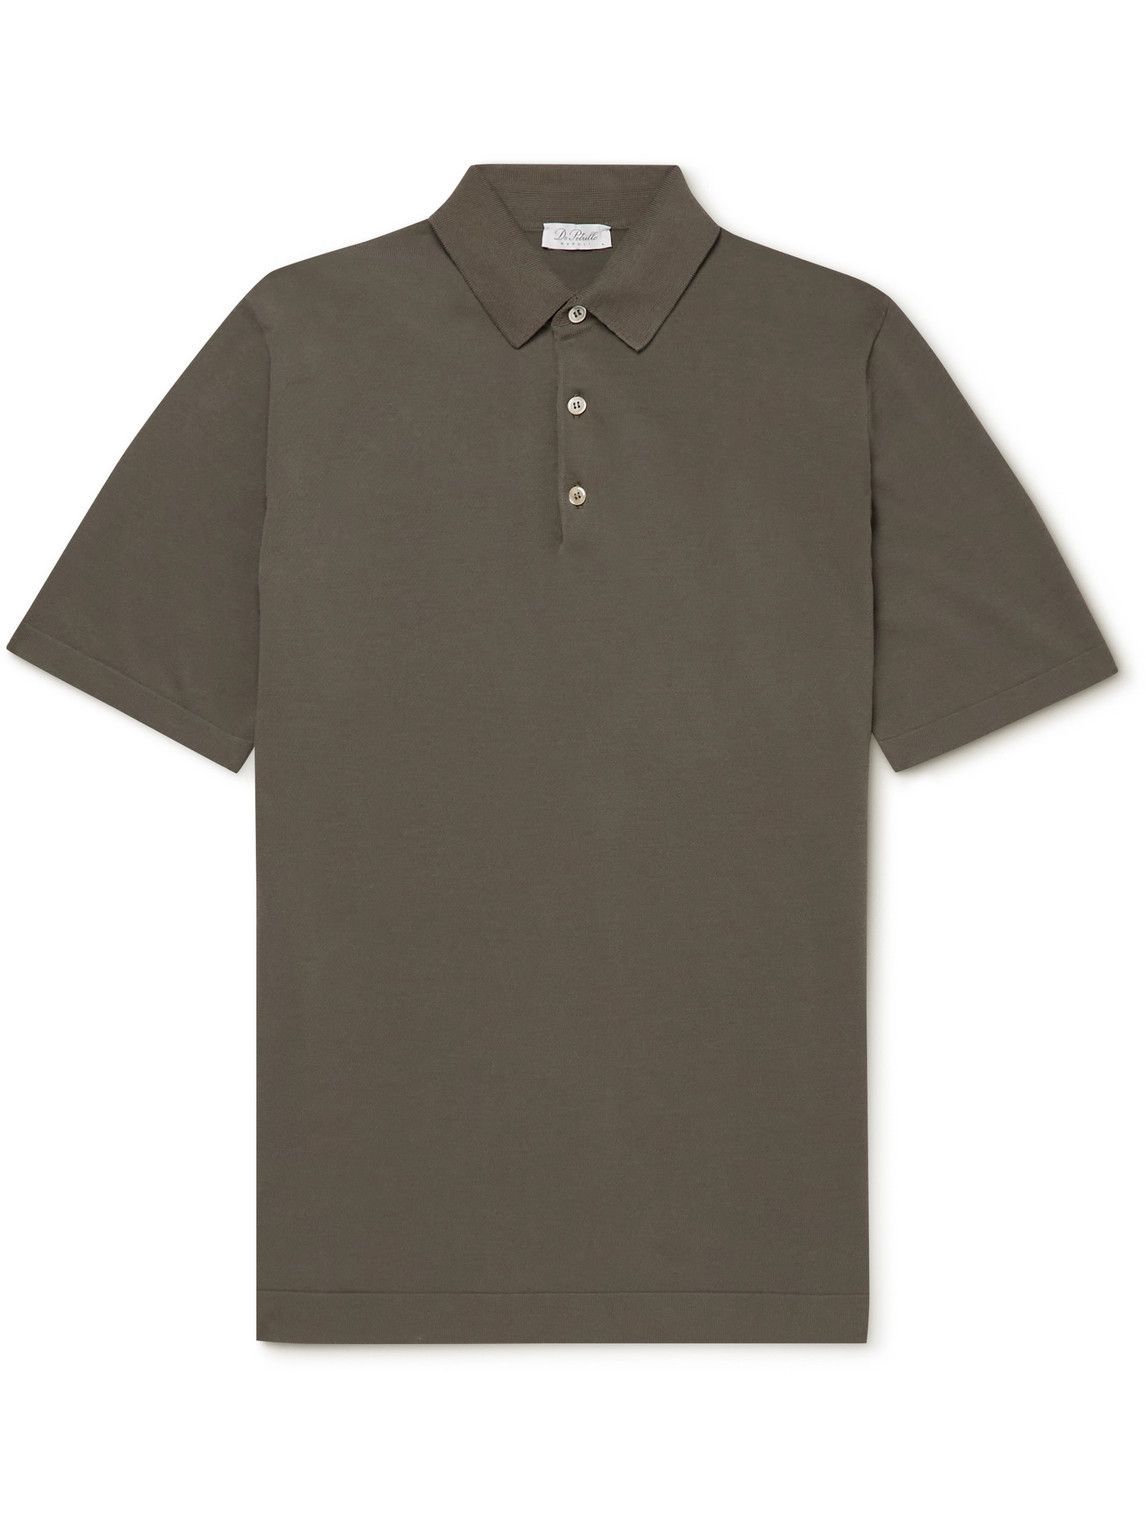 De Petrillo - Cotton-Jersey Polo Shirt - Brown De Petrillo